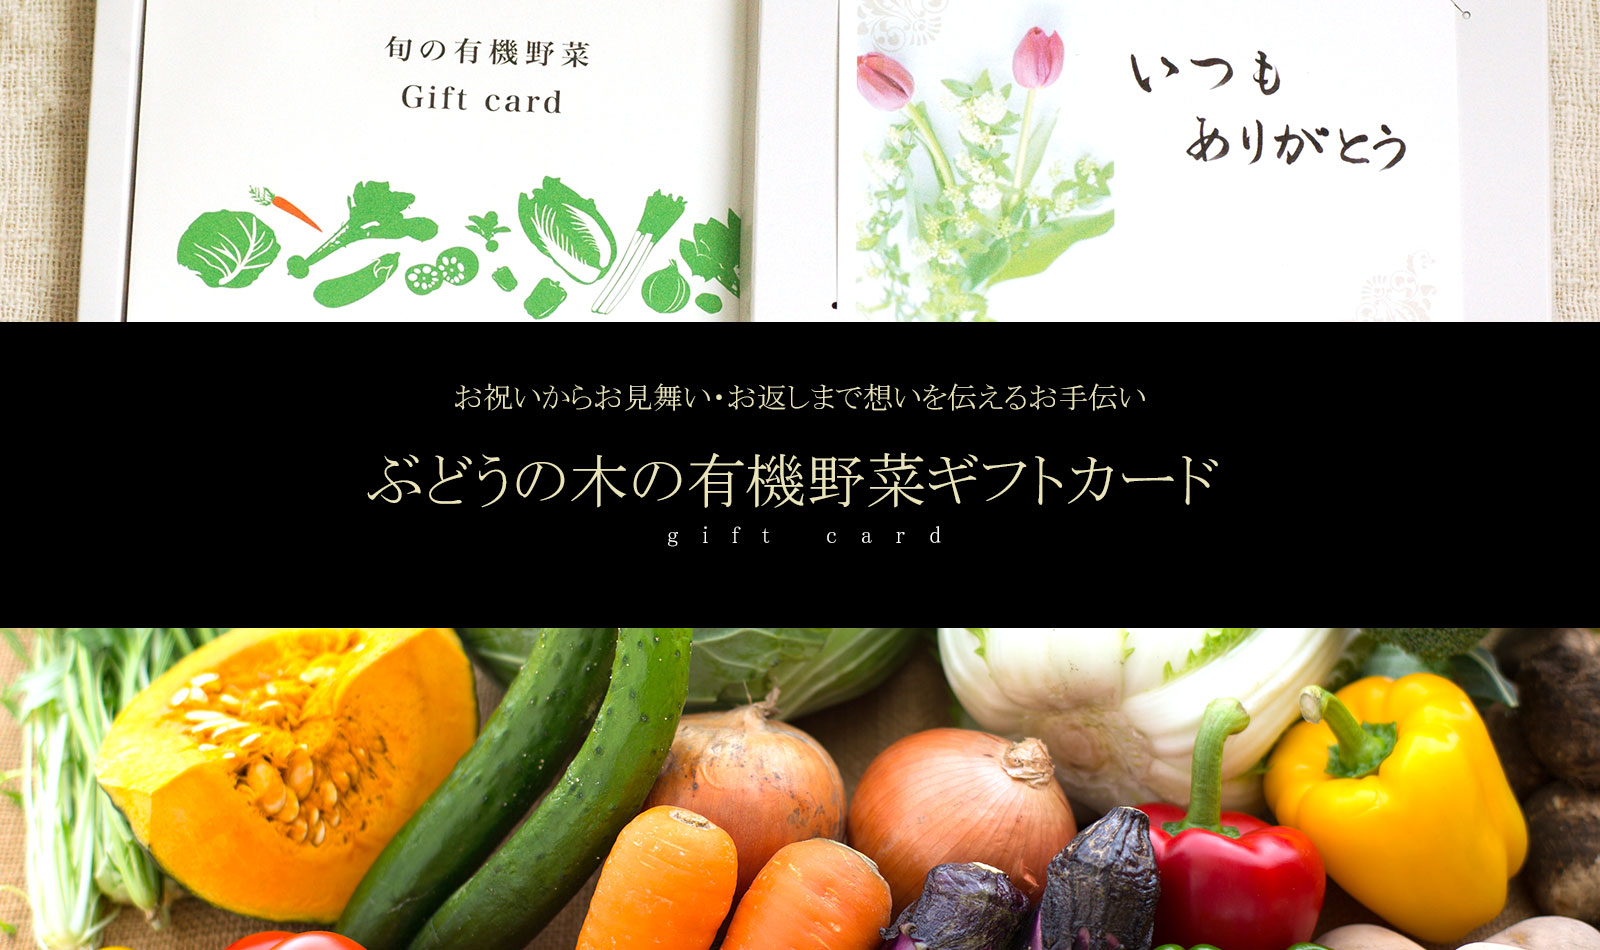 1772円 Seasonal Wrap入荷 無農薬旬 野菜Lセット ギフト 自然食品 gift